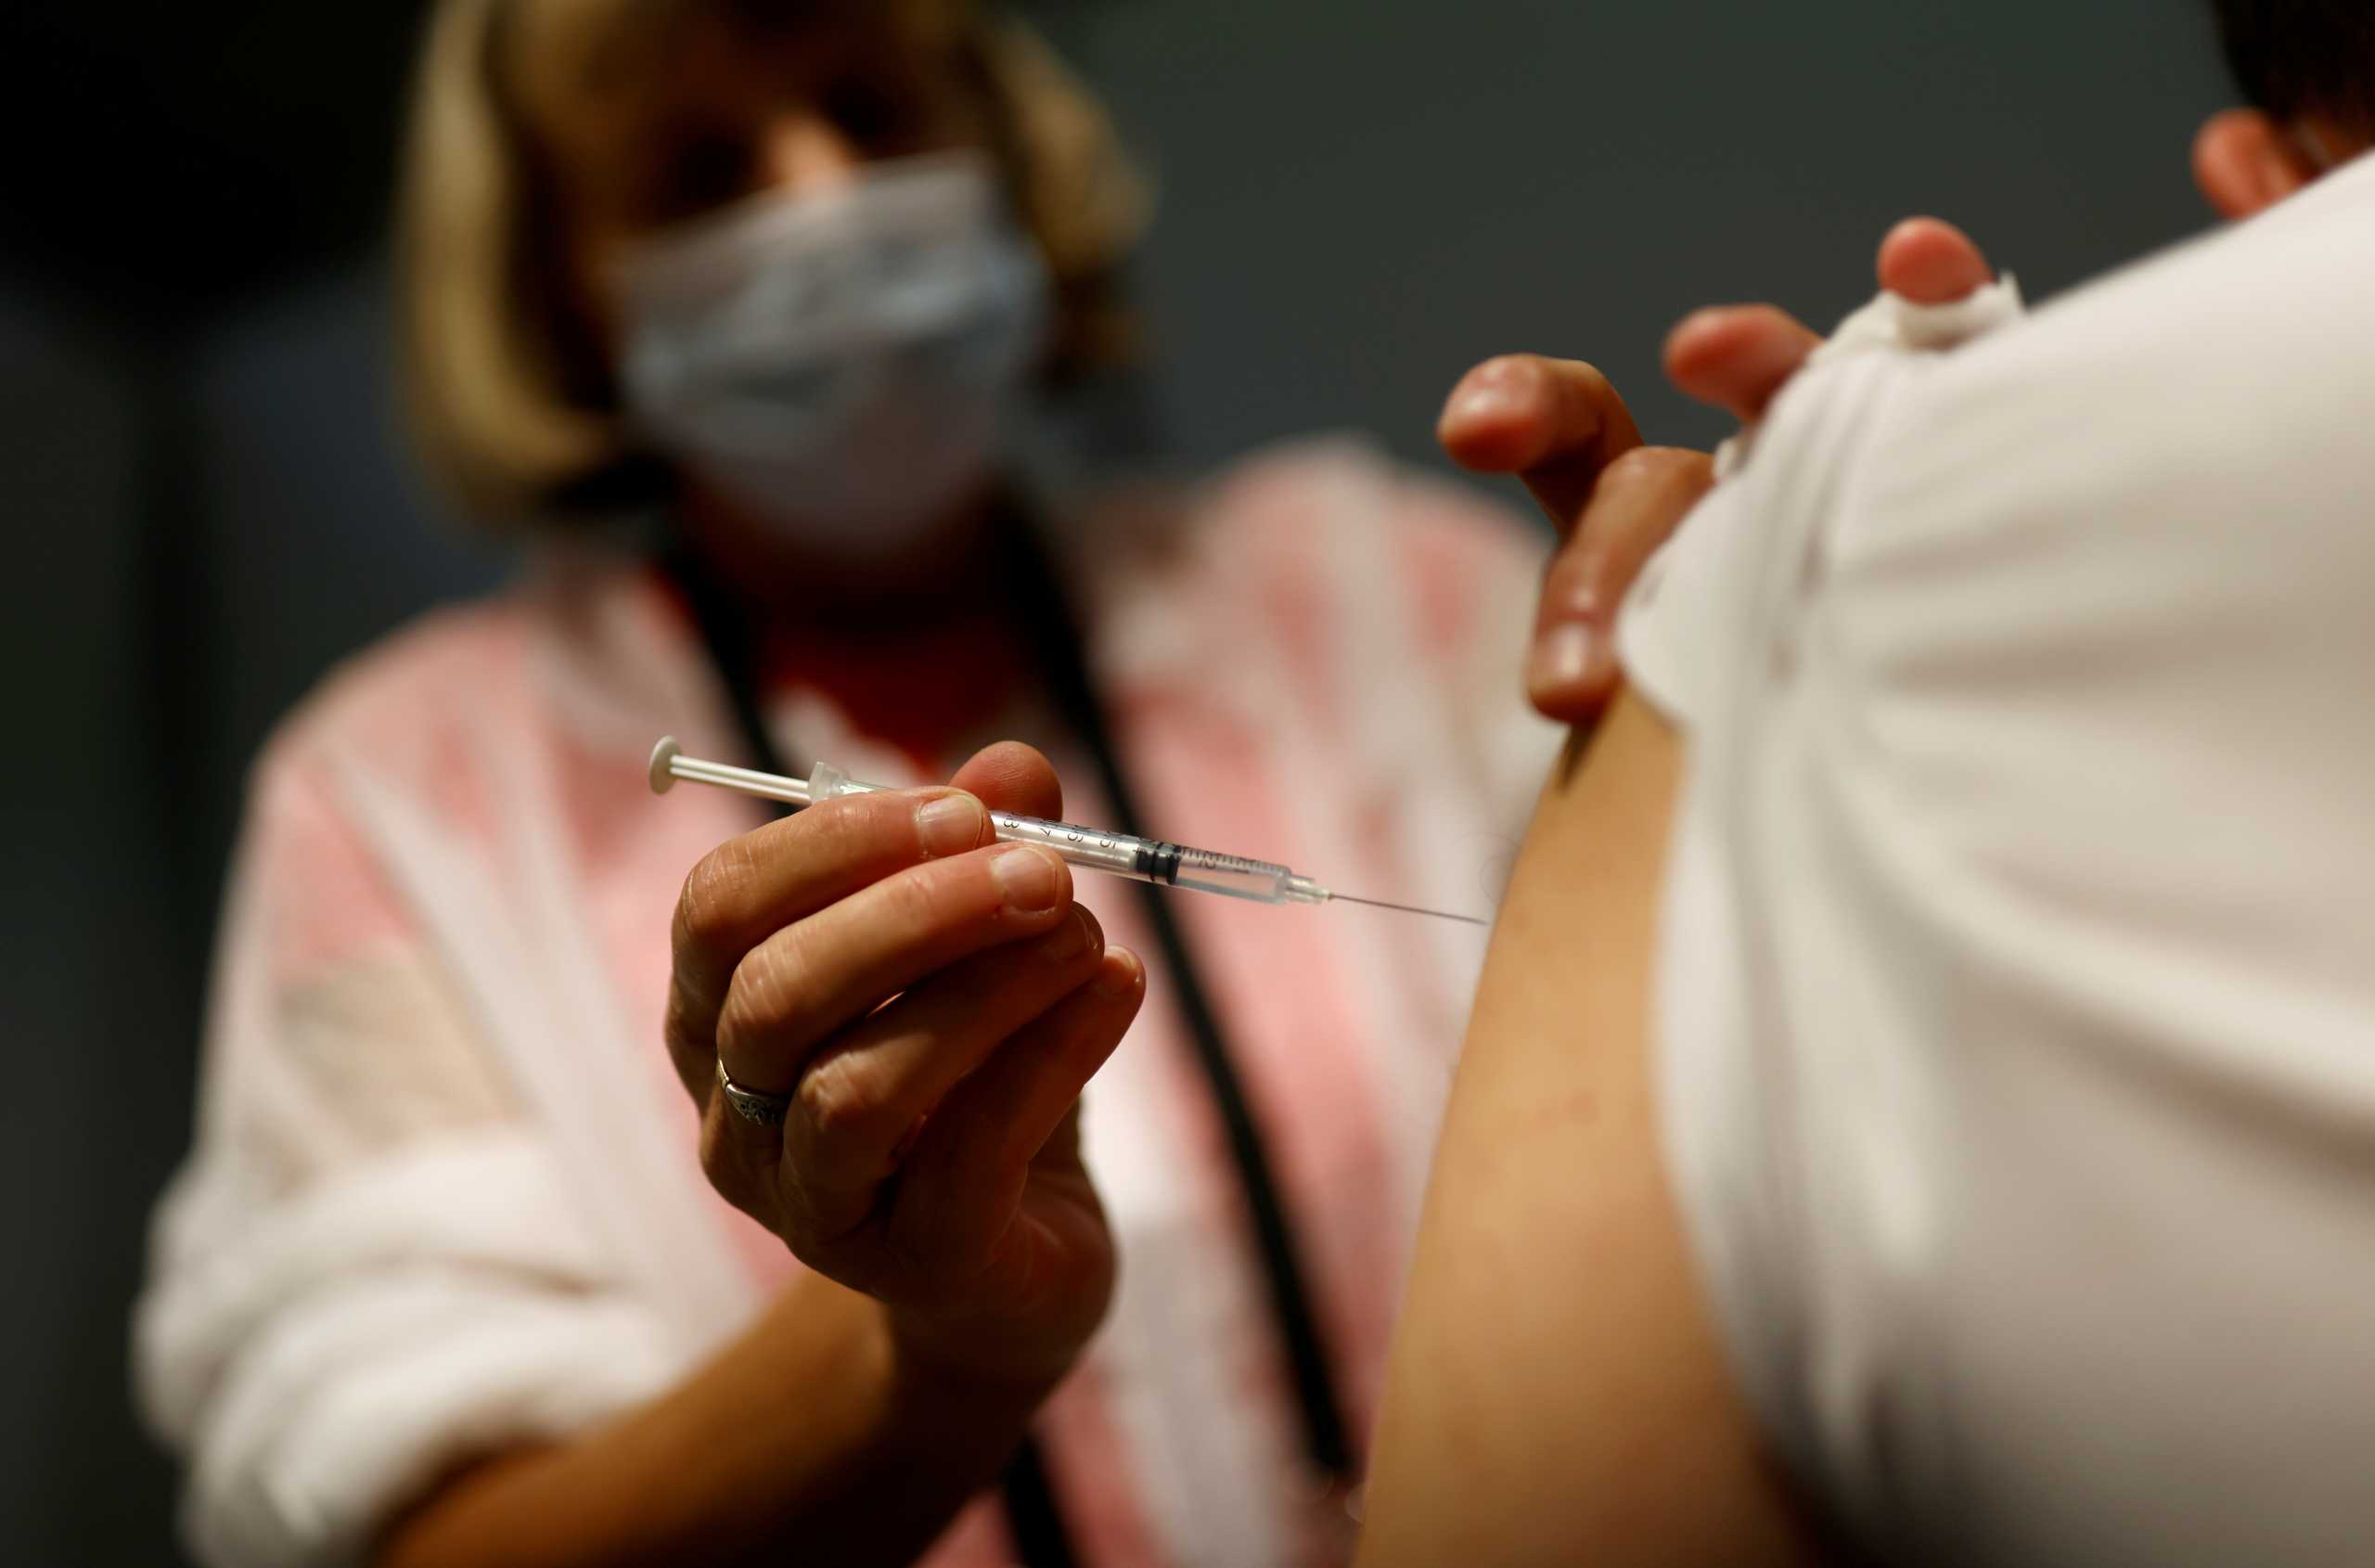 Ανησυχία για τη χαμηλή εμβολιαστική κάλυψη ενώ η μετάλλαξη «Ομικρον» εξαπλώνεται